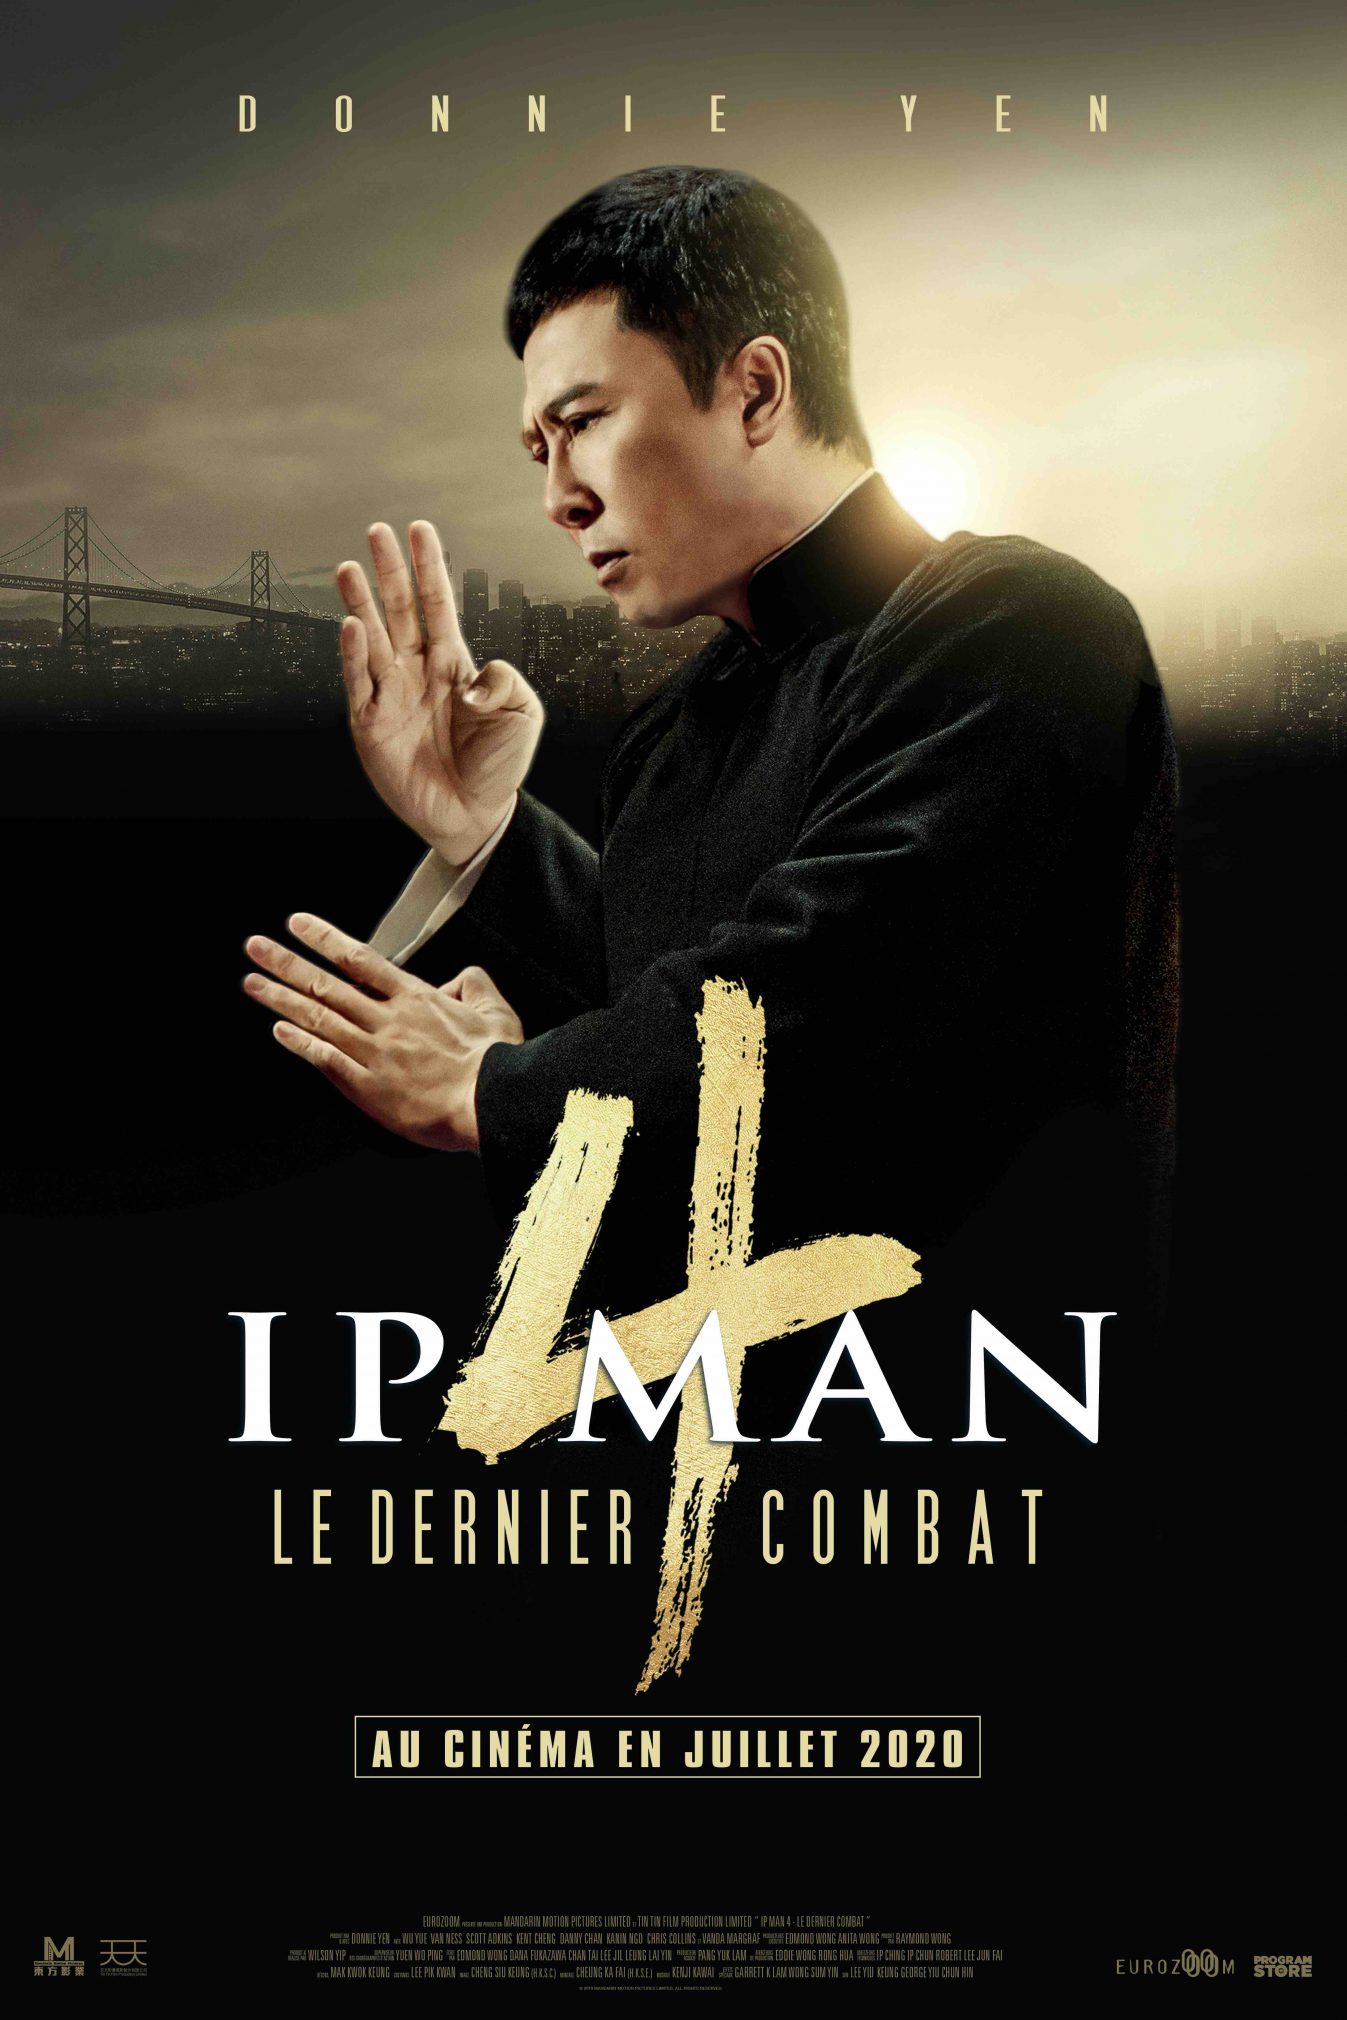 Sortie d'Ip Man 4 avec Donnie Yen décalée au 22 juillet